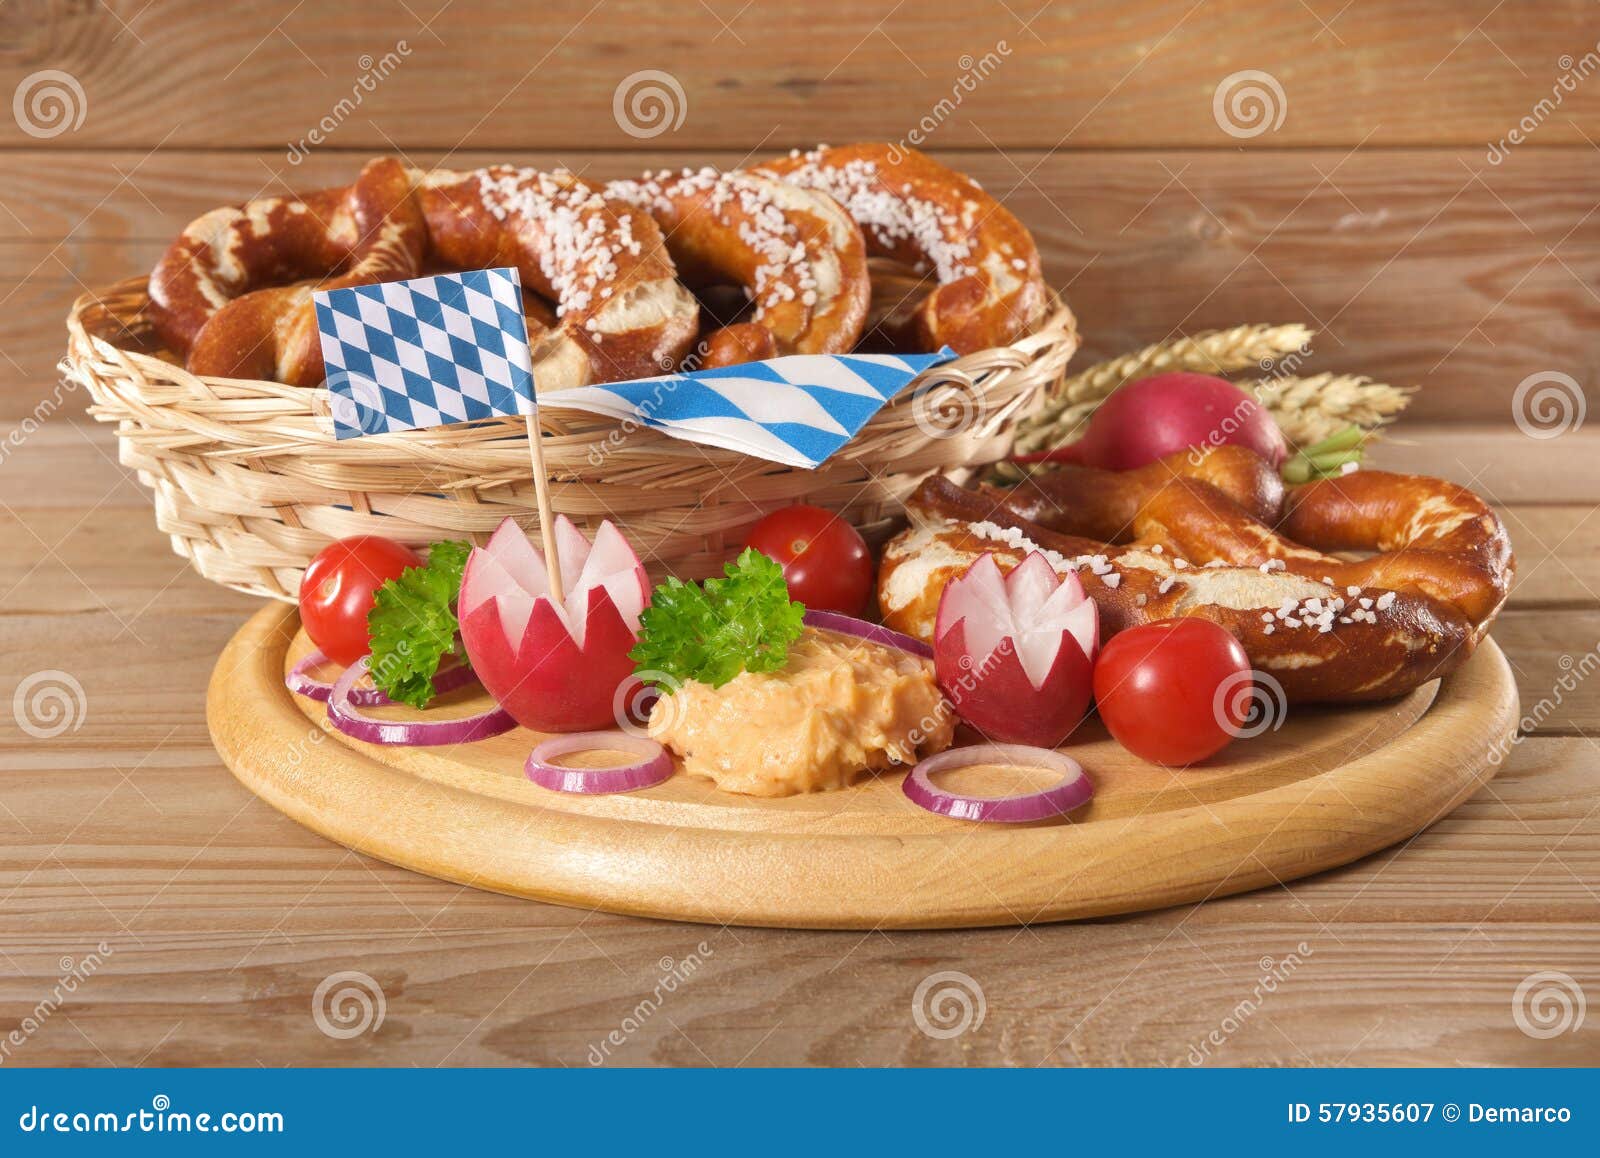 Bayerisches Frühstück stockbild. Bild von körner, markierungsfahne ...